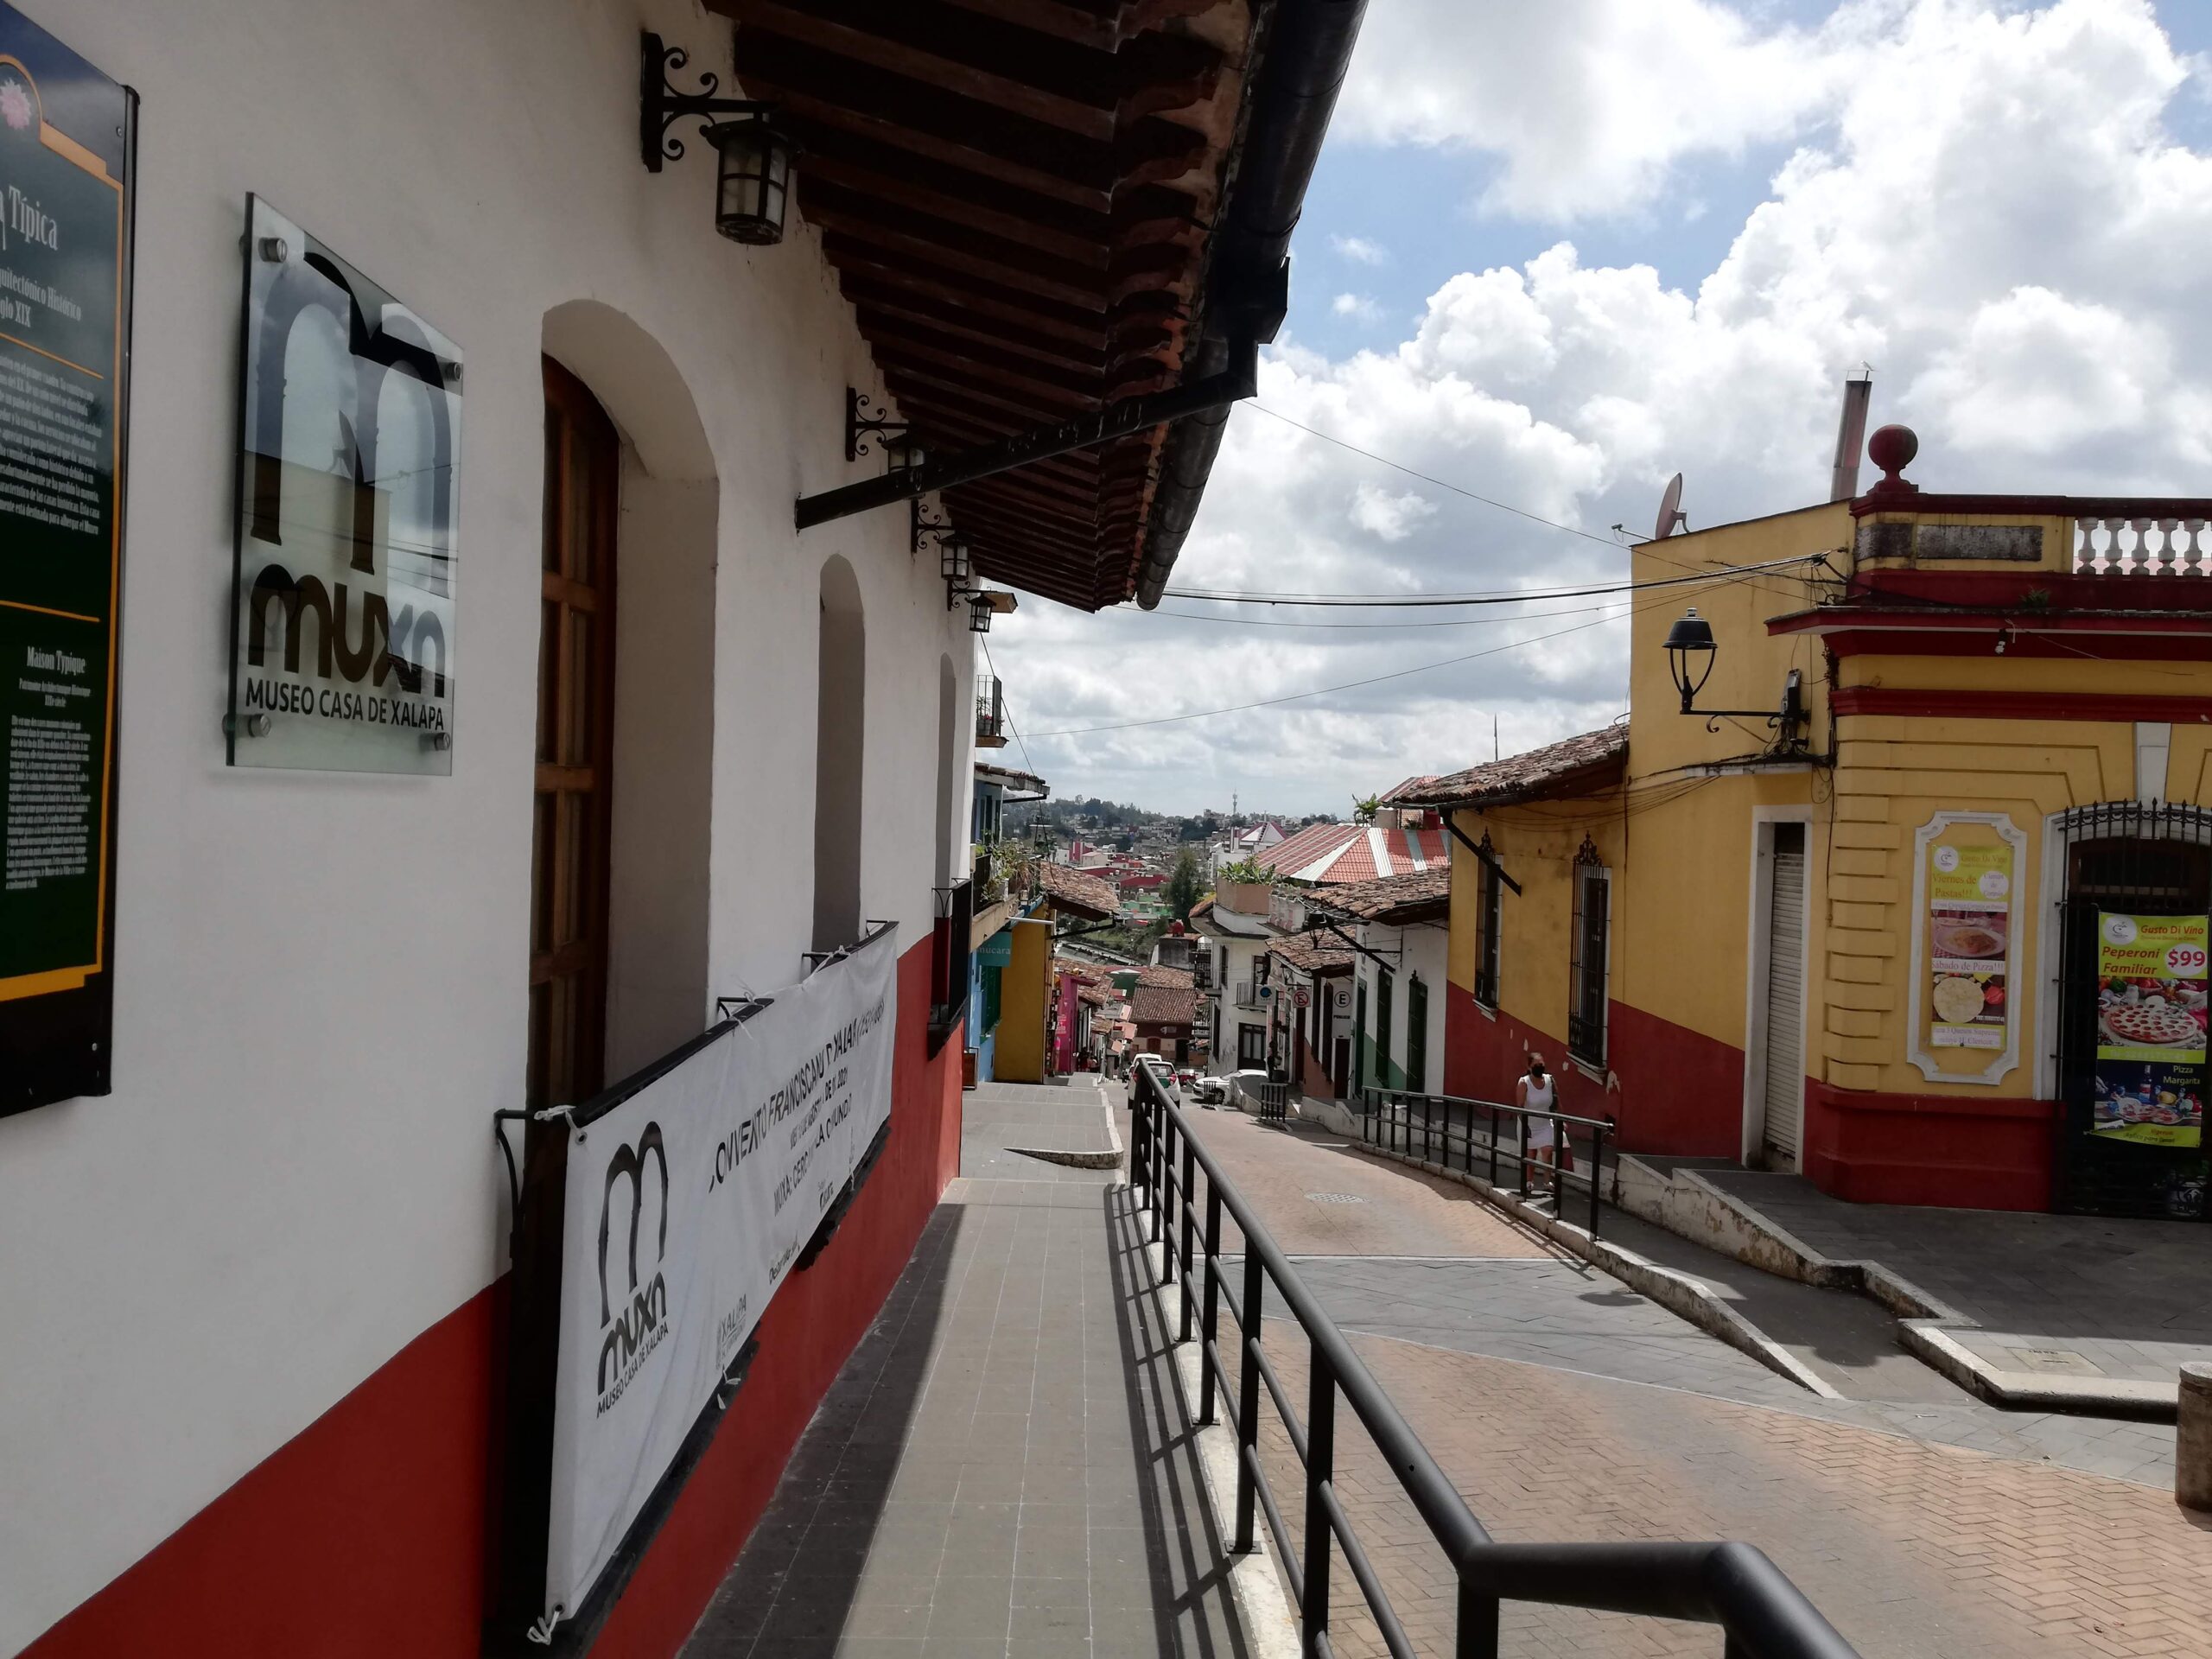 Museos en Xalapa, qué ver en cada uno